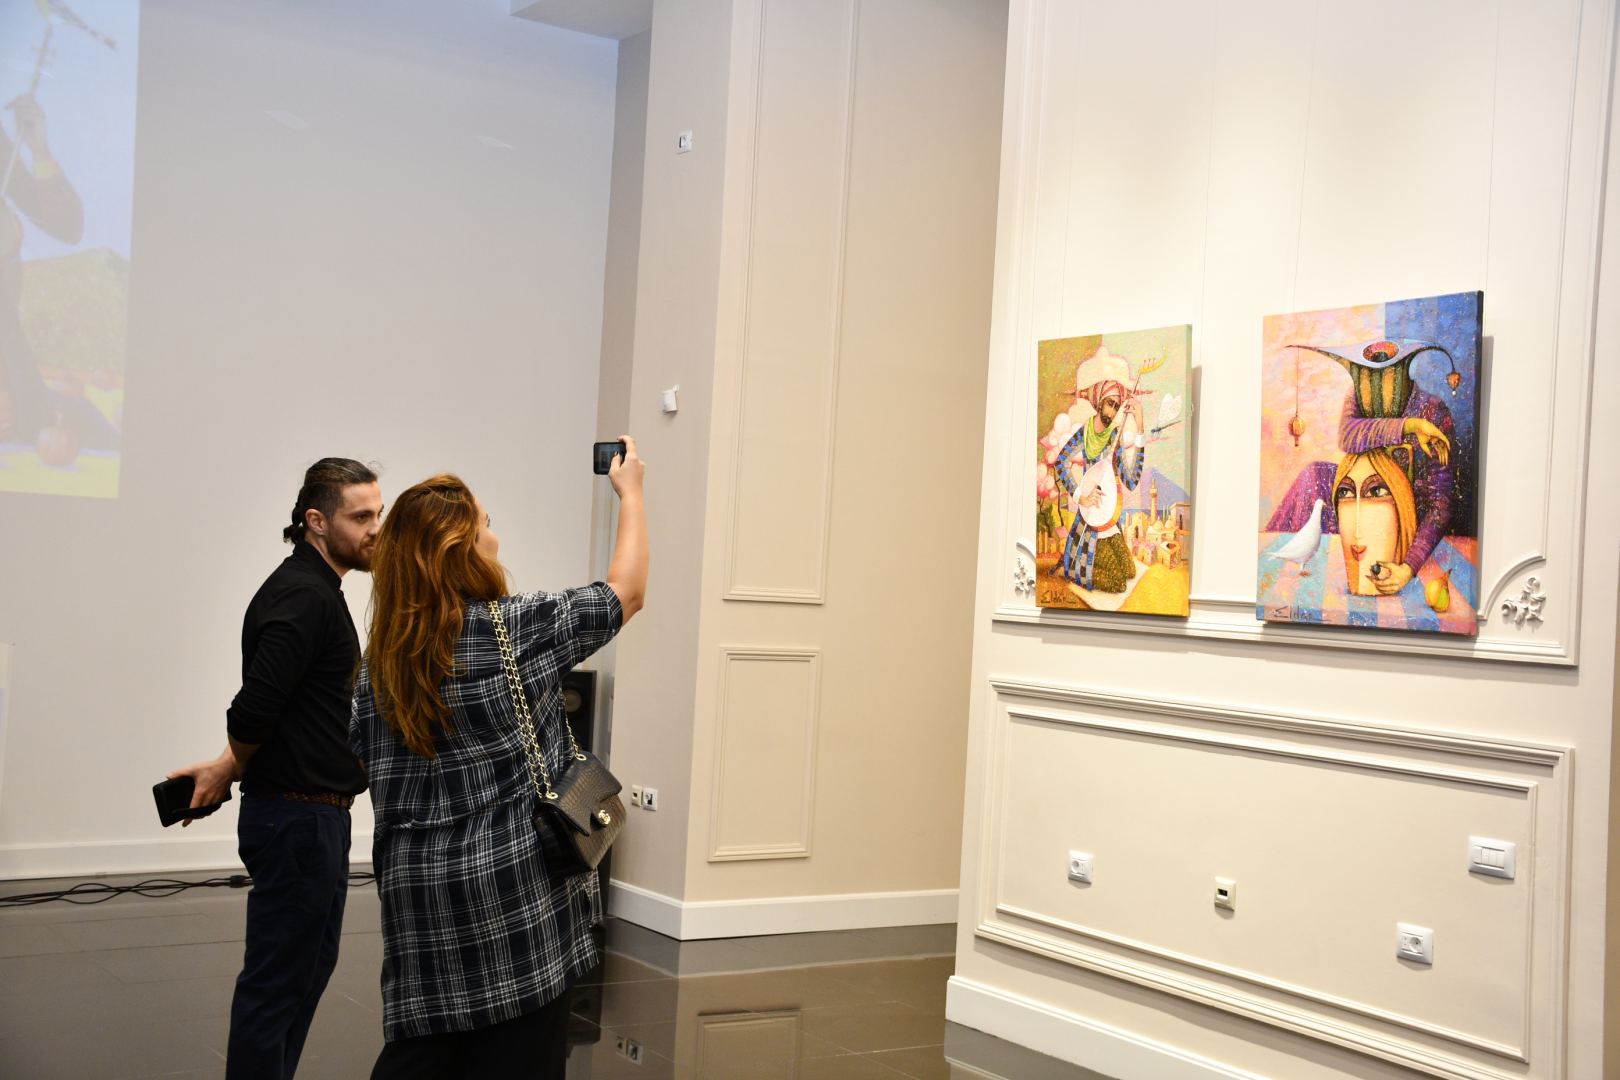 Мистические образы и мощная энергетика – выставка работ Эльдара Бабазаде в Баку (ФОТО)